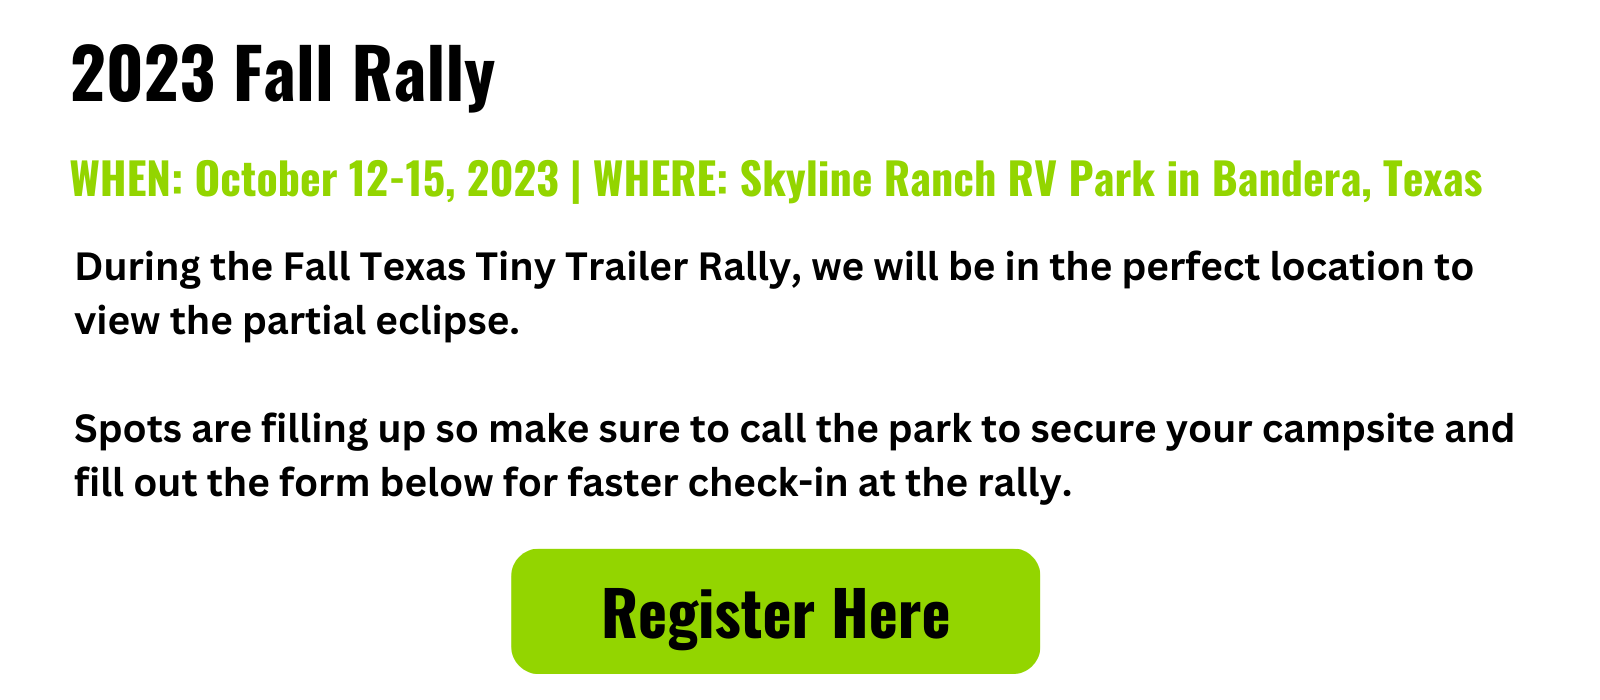 2023 Fall Texas Tiny Trailer Rally